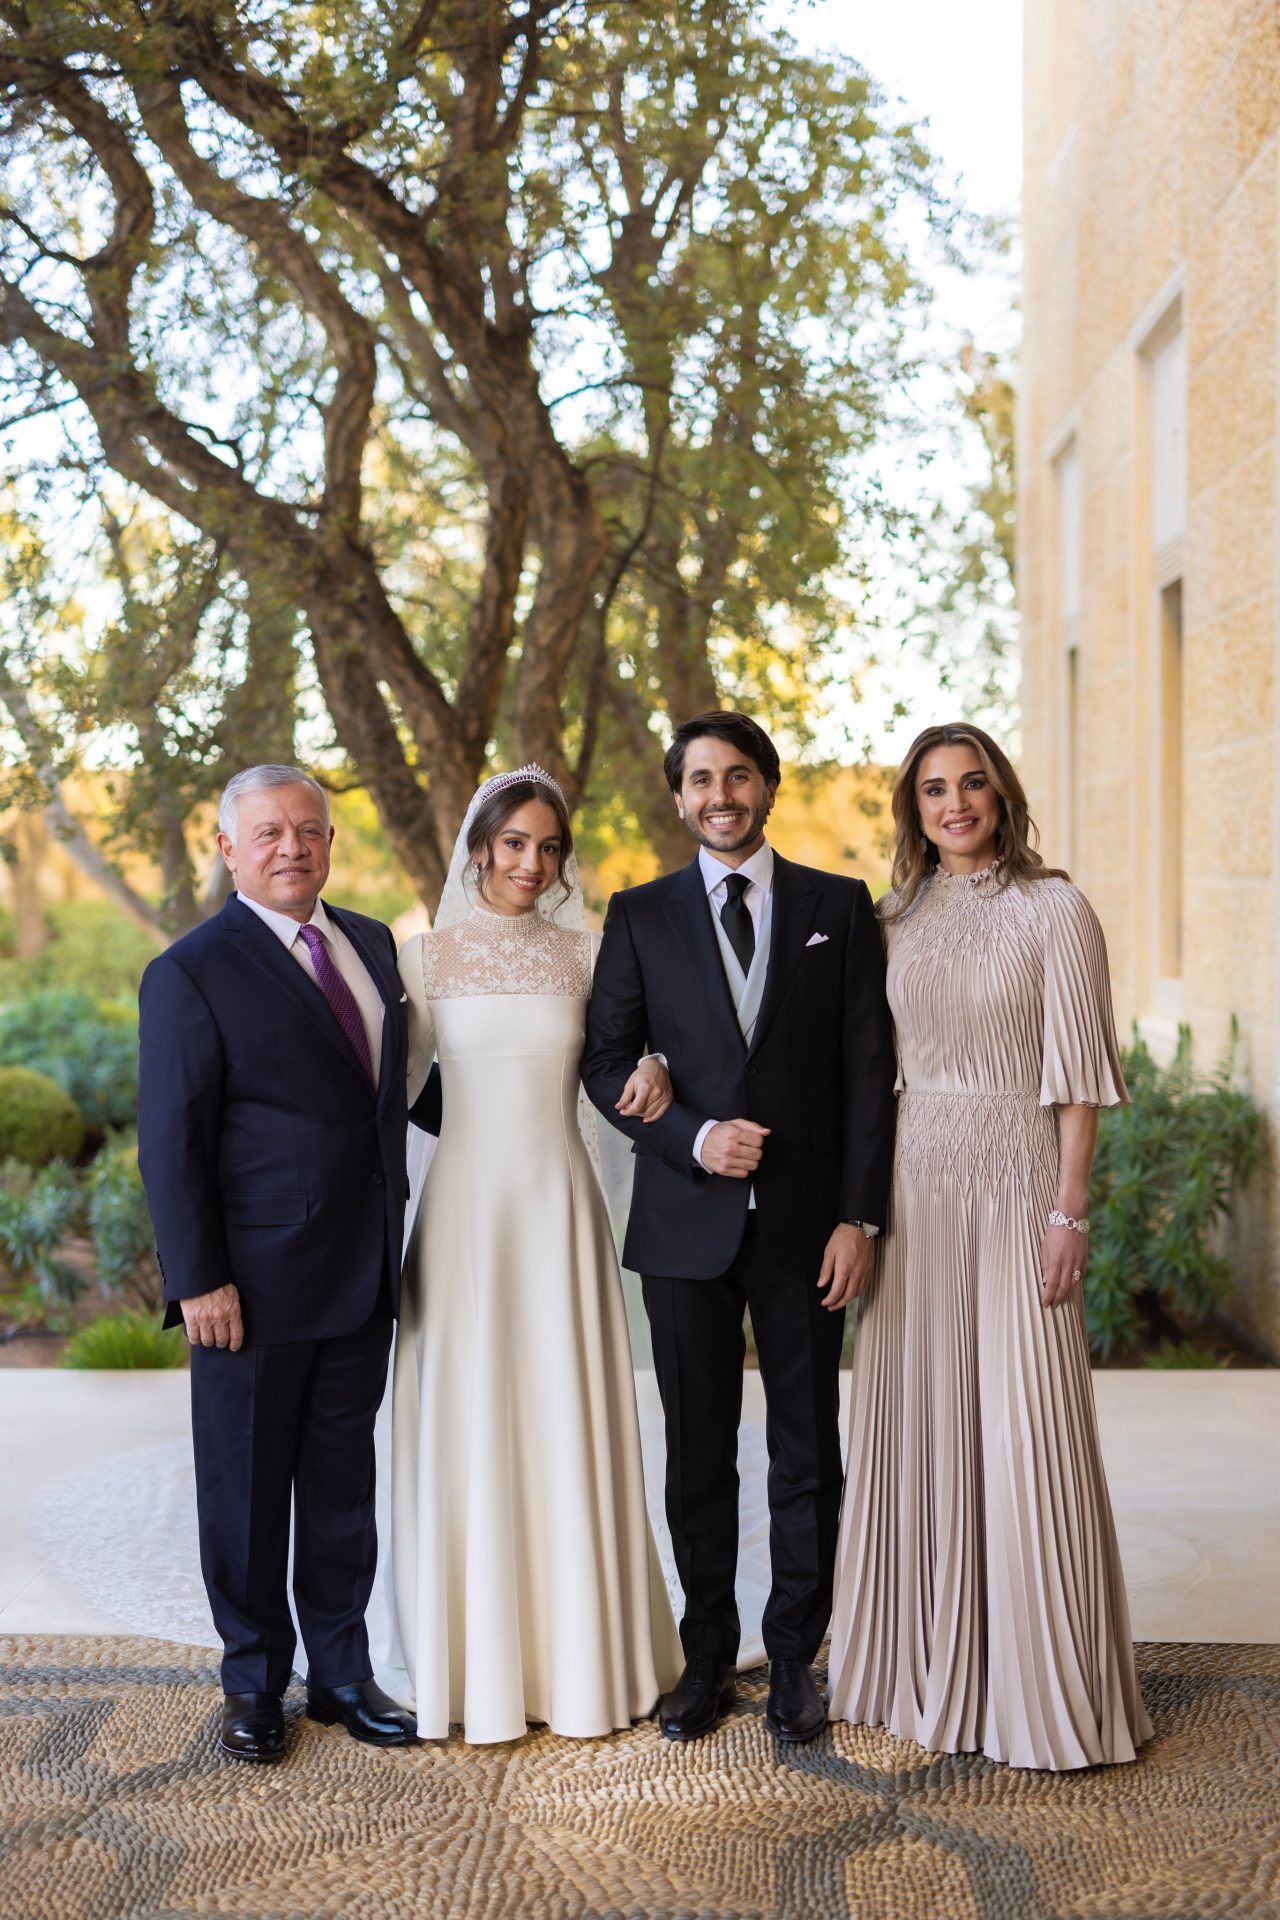 2023 In Photos The Spectacular Wedding Of Jordanian Princess Iman 